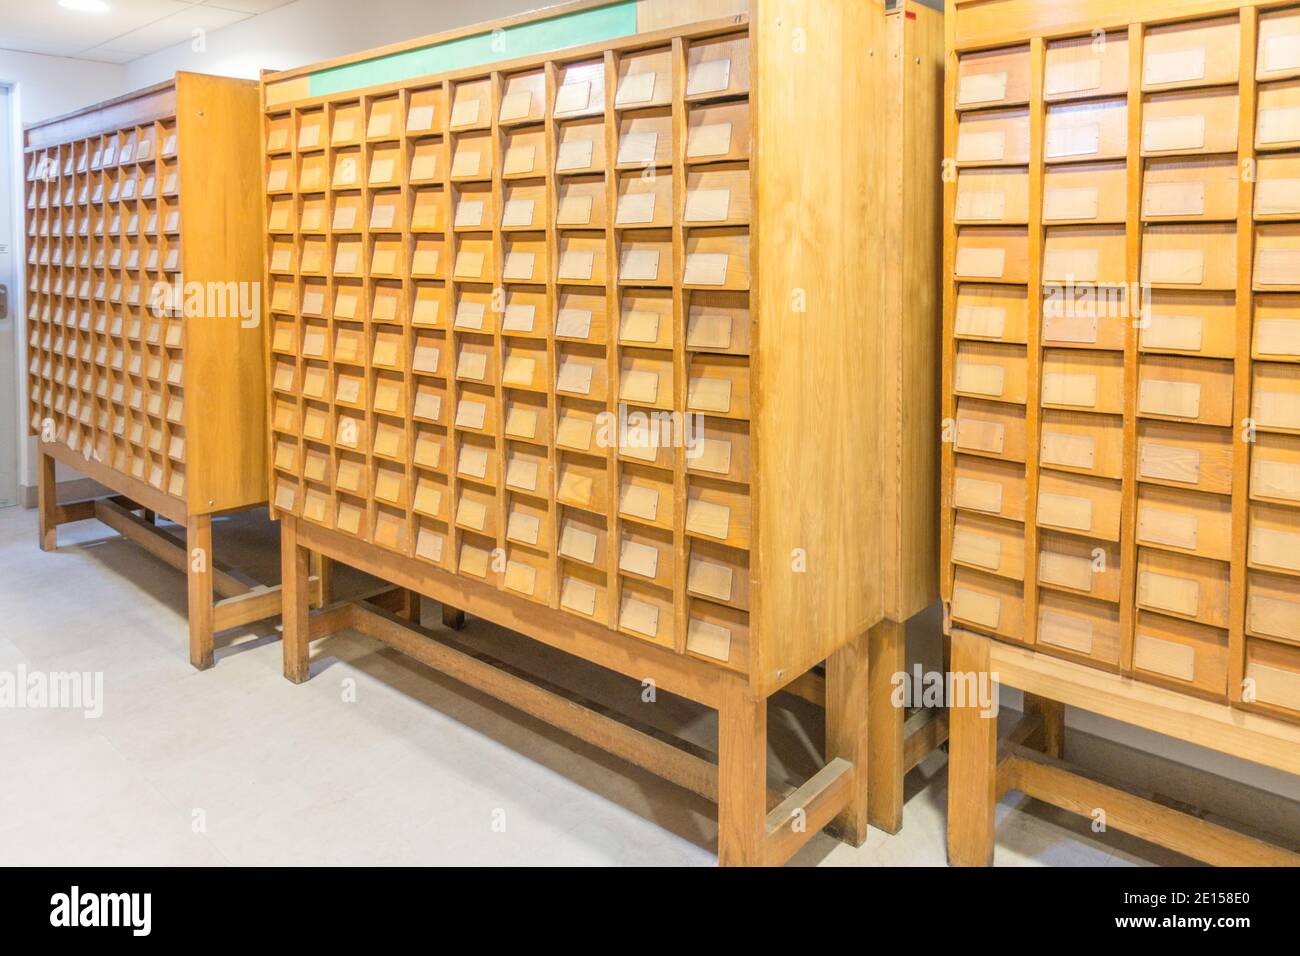 Vecchie scatole di catalogo vintage con molti cassetti indice in legno in archivio libreria Foto Stock